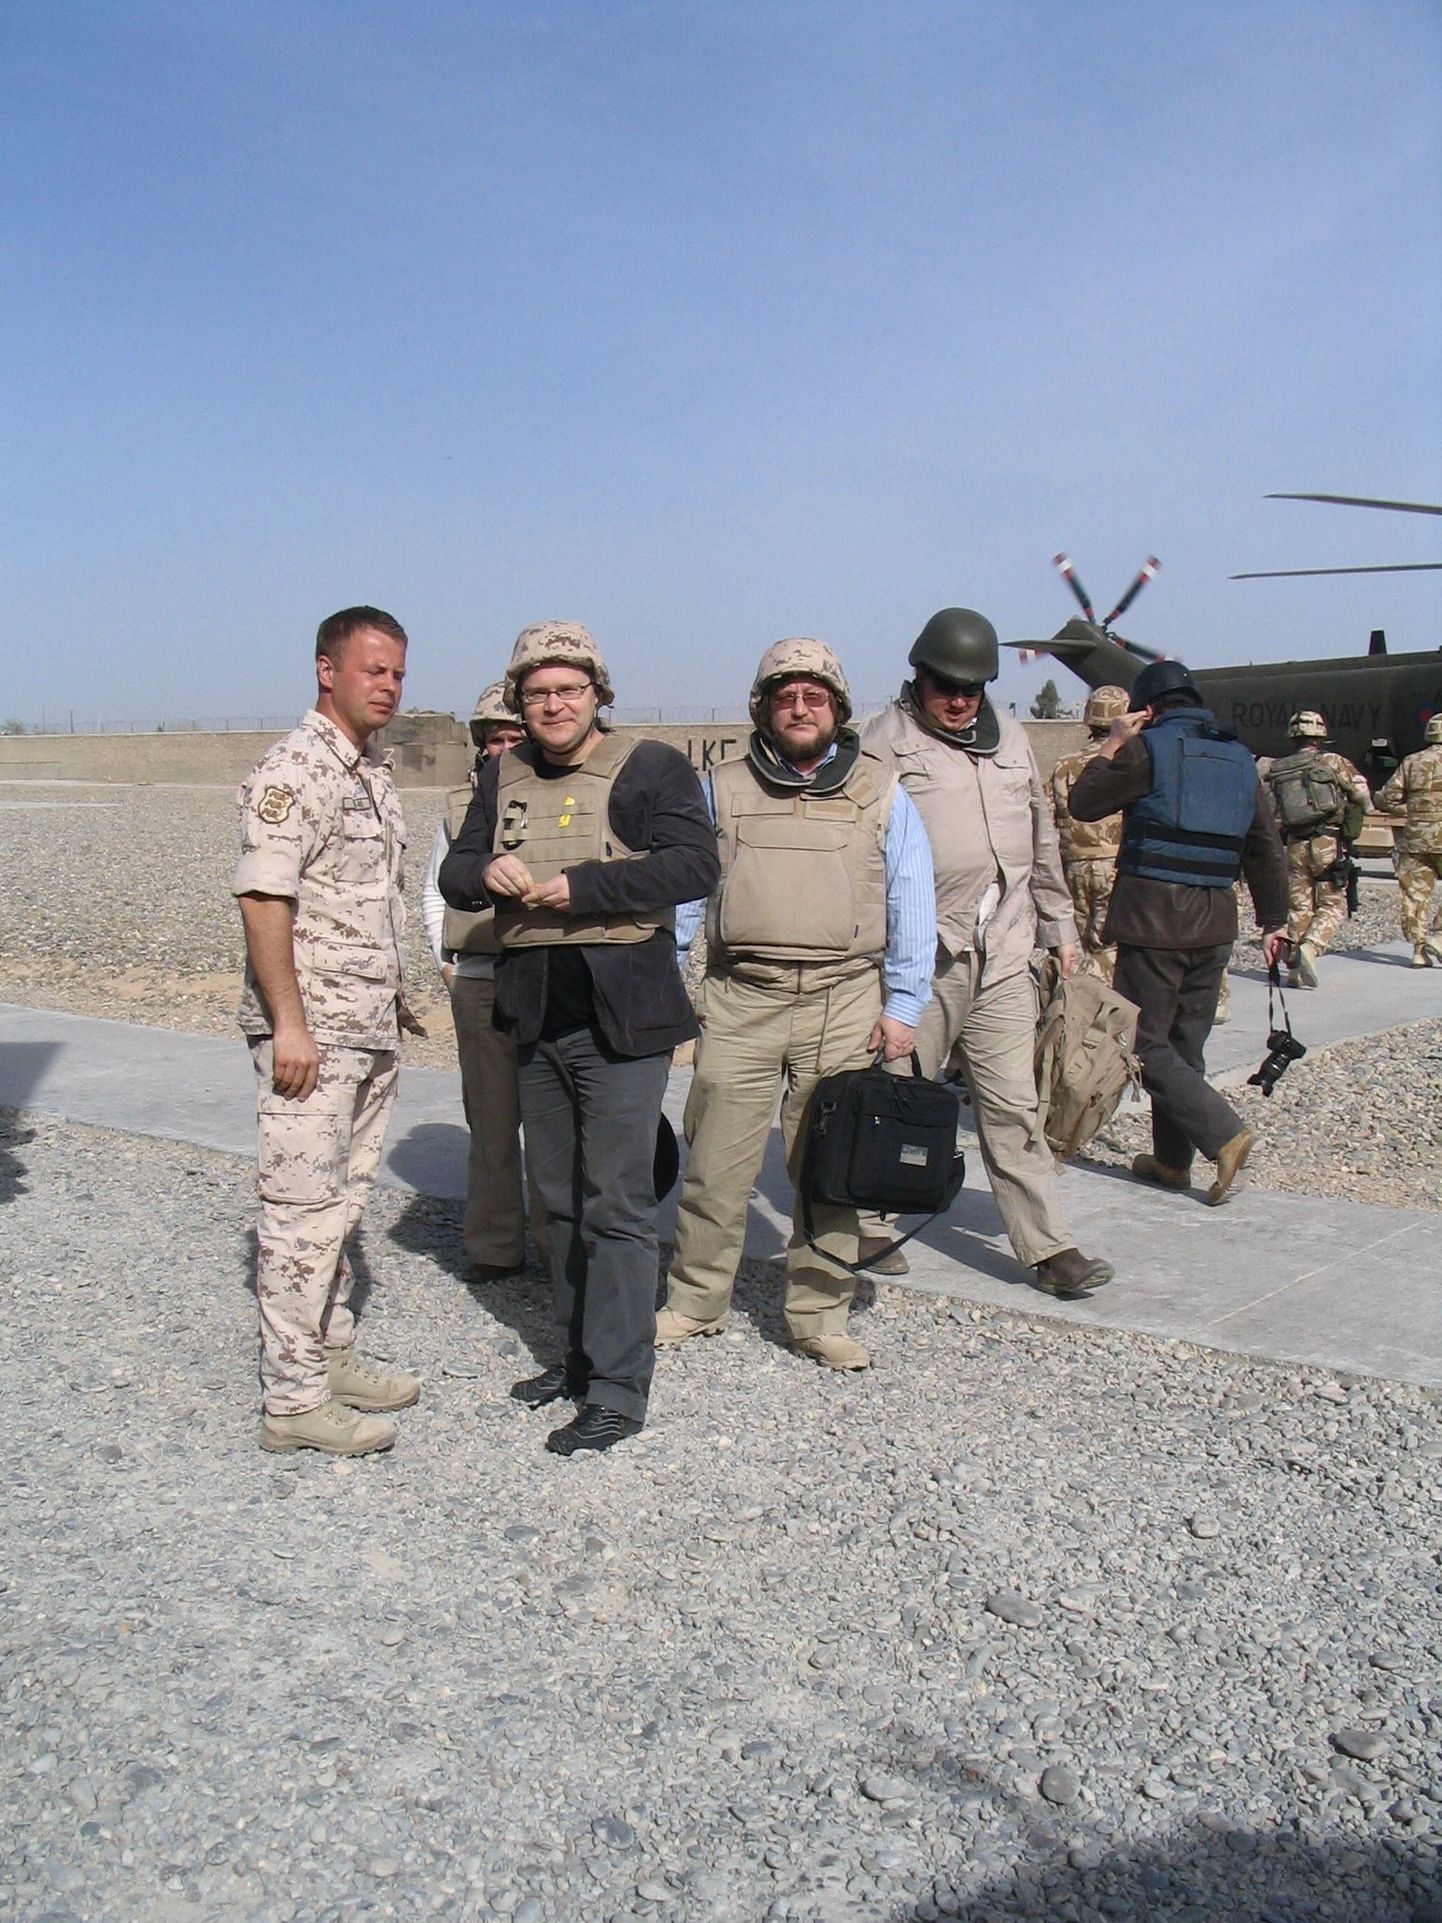 Kolonelleitnant Sten Reimann, välisminister Urmas Paet, suursaadik Harri Tiido ja Daniel Schaer, kes on Eesti asjur Afganistanis, Lashkar Gah' sõjaväebaasi helikopterite maandumisplatsil.